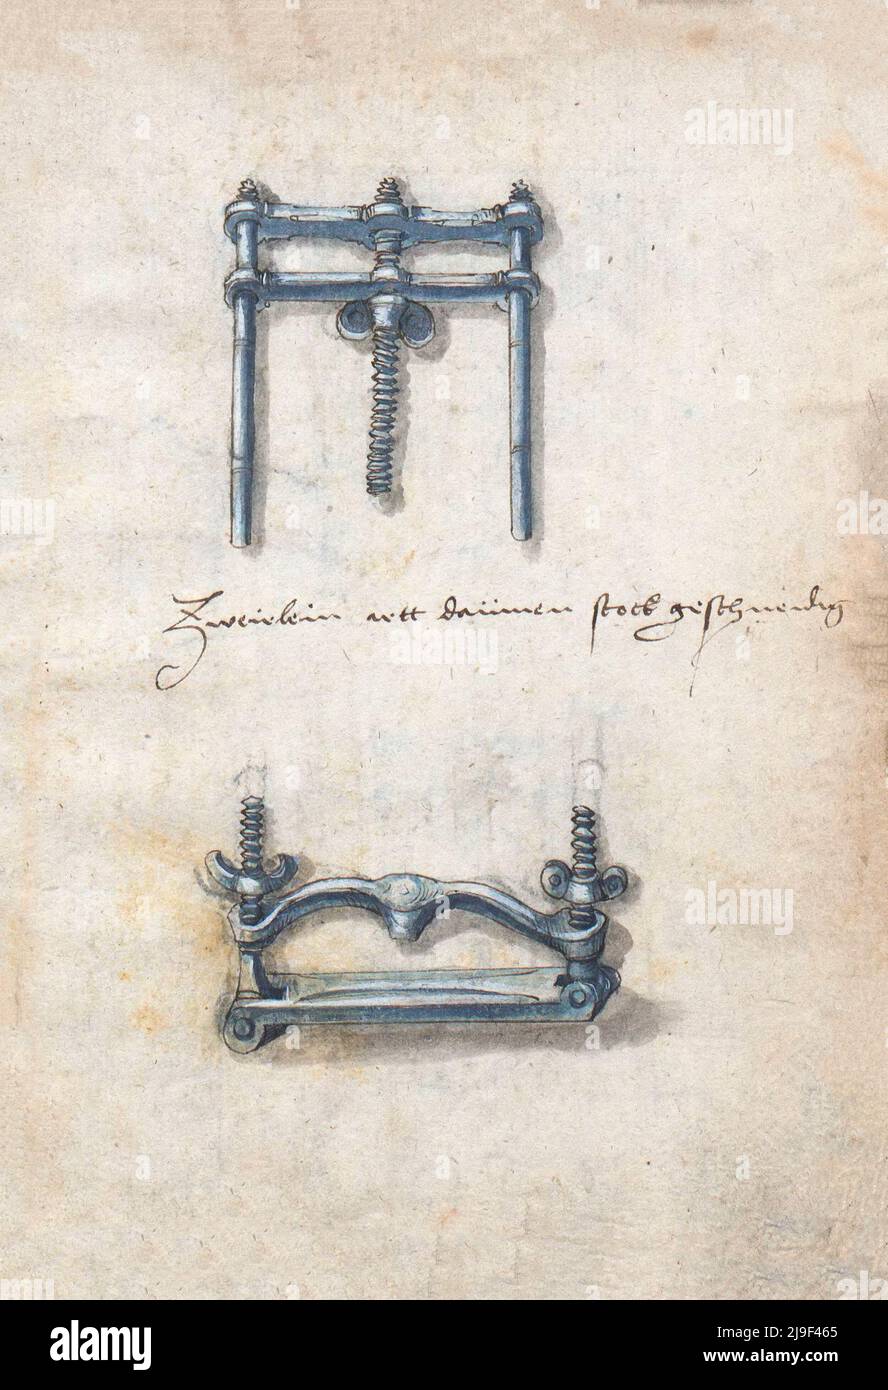 Ilustración medieval del cerrajero de vicio. Las herramientas de Martin Löffelholz (1505) Löffelholtz Codex. Ilustraciones y descripciones de todo tipo de mano Foto de stock